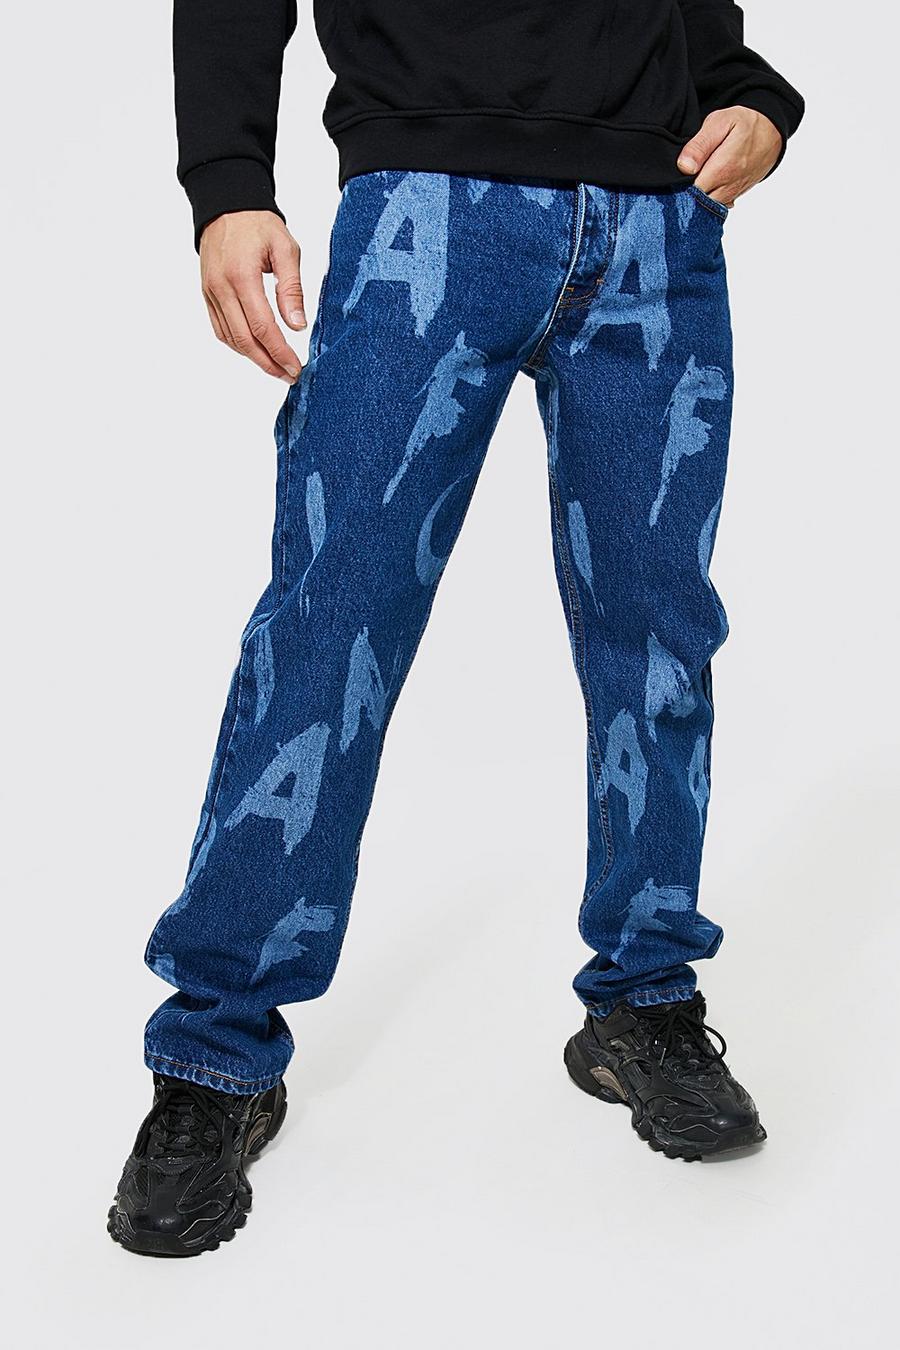 Lockere Jeans mit Laser Buchstaben, Mid blue